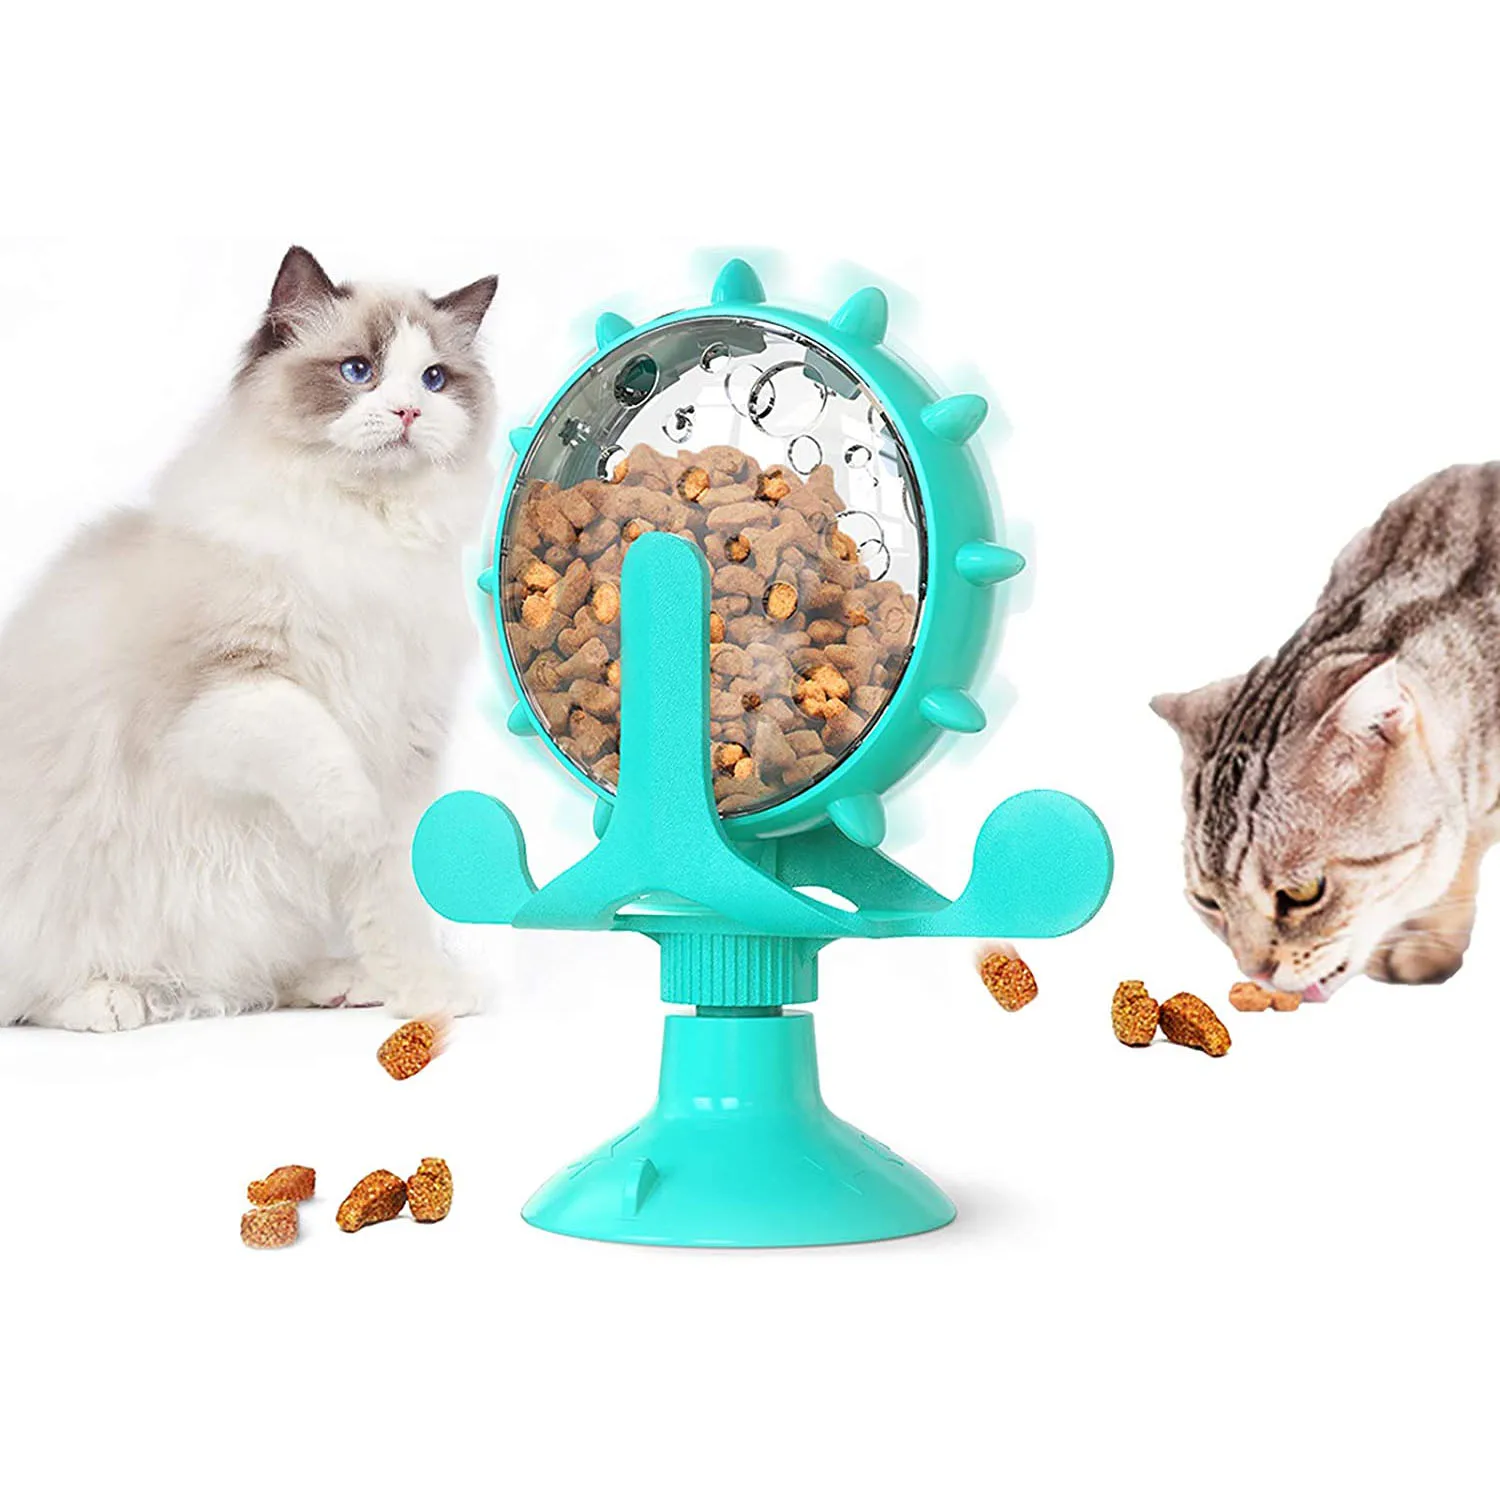 

2021 интерактивная игрушка для кошек с утечкой, оригинальная вращающаяся игрушка-колесо для кошек, котят, собак, ветряная мельница, аксессуар...